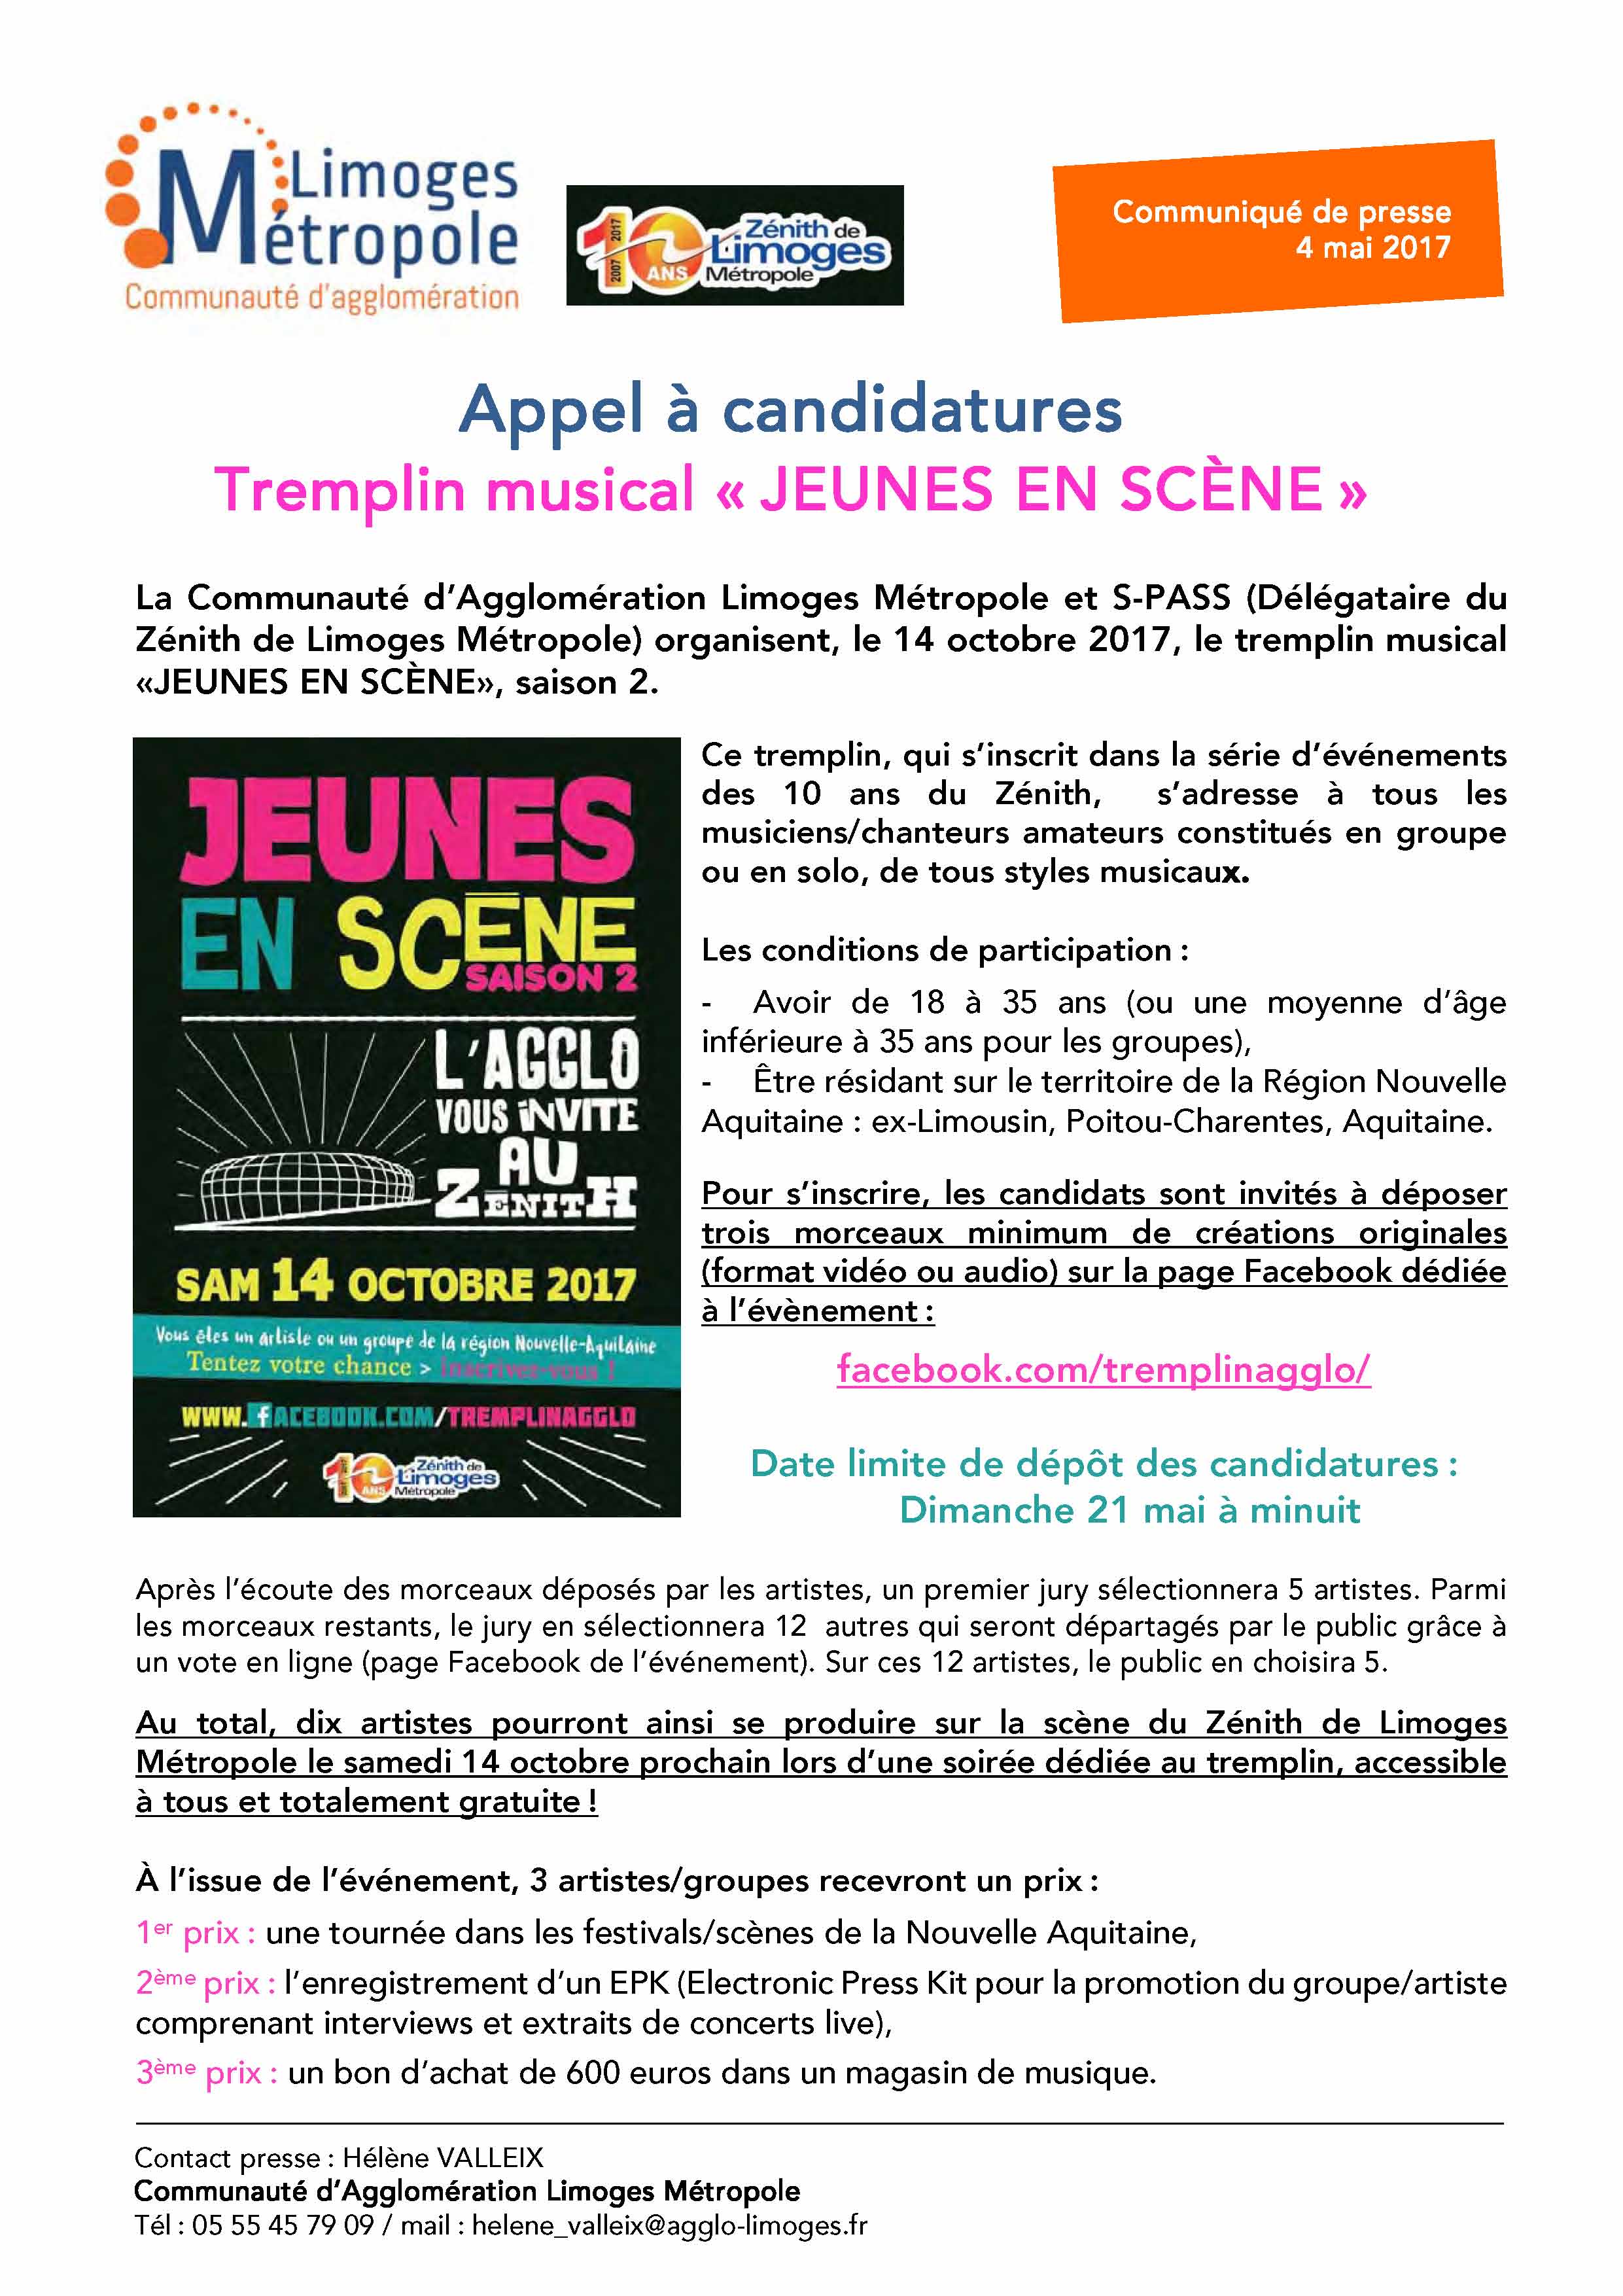 cp-candidatures-tremplin-jeunes-en-scene-4-05-2017